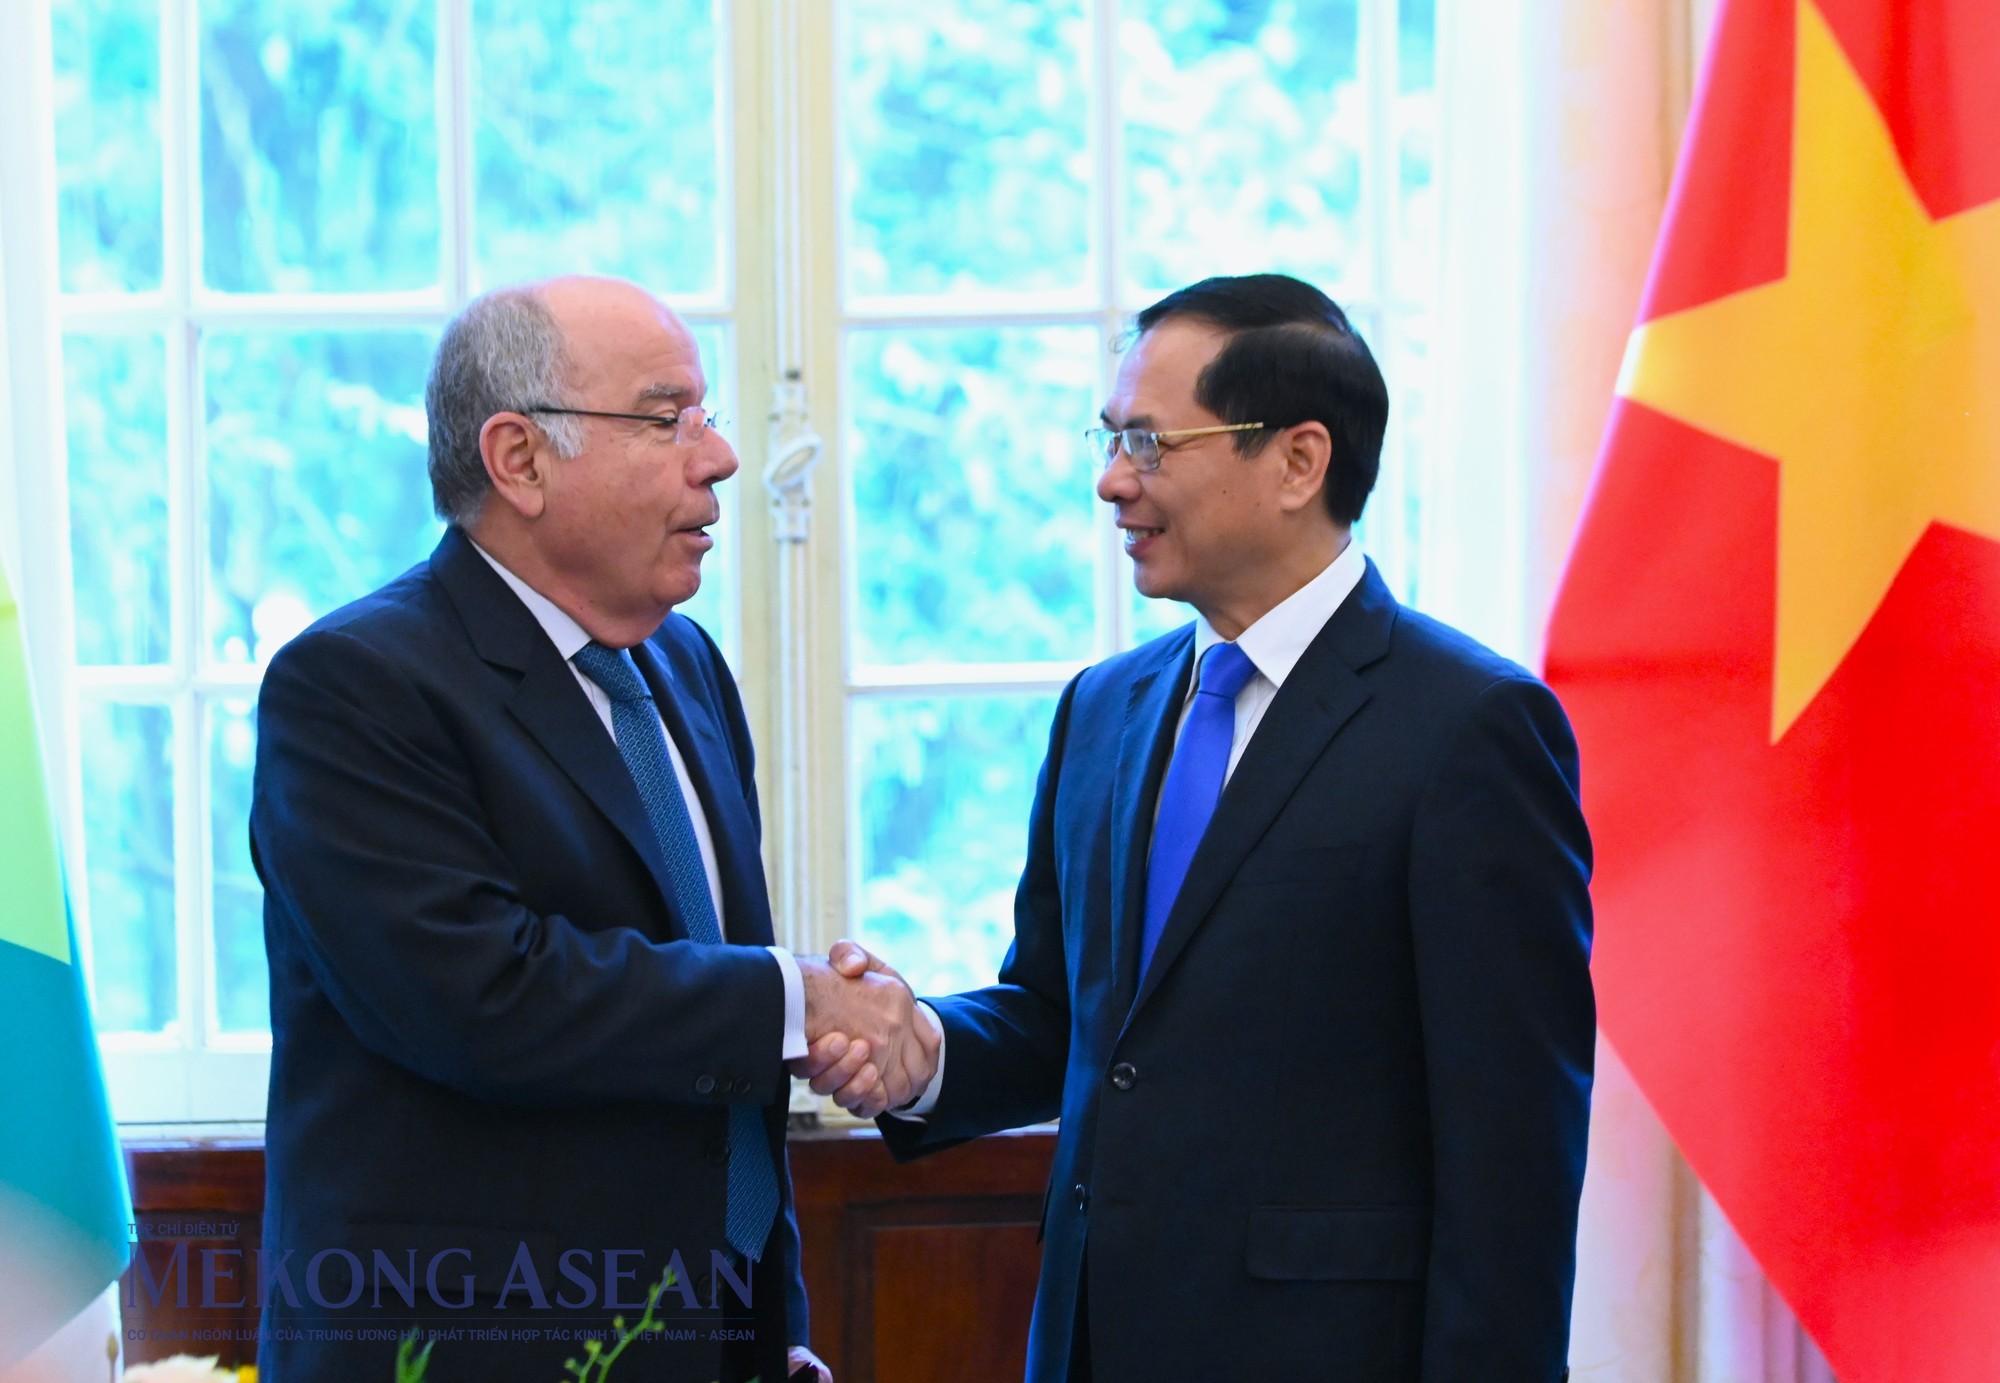 Ảnh: Đỗ Thảo - Mekong ASEAN